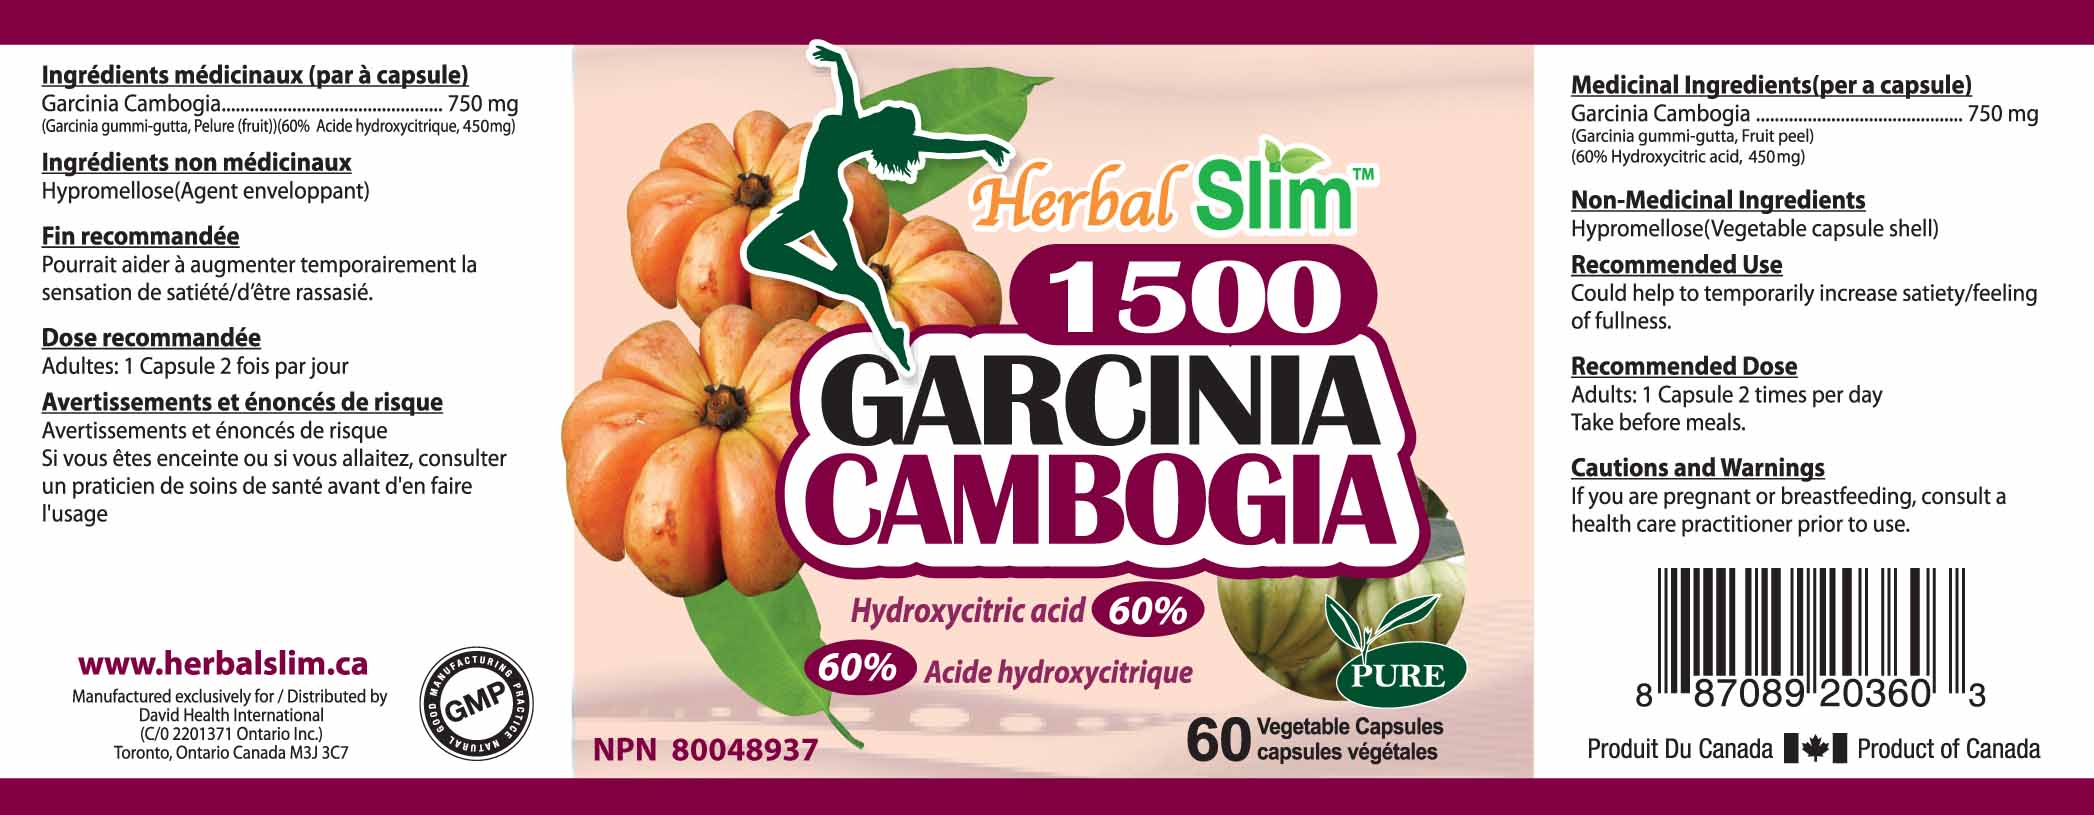 HerbalSlim GARCINIA CAMBOGIA 1500 60%